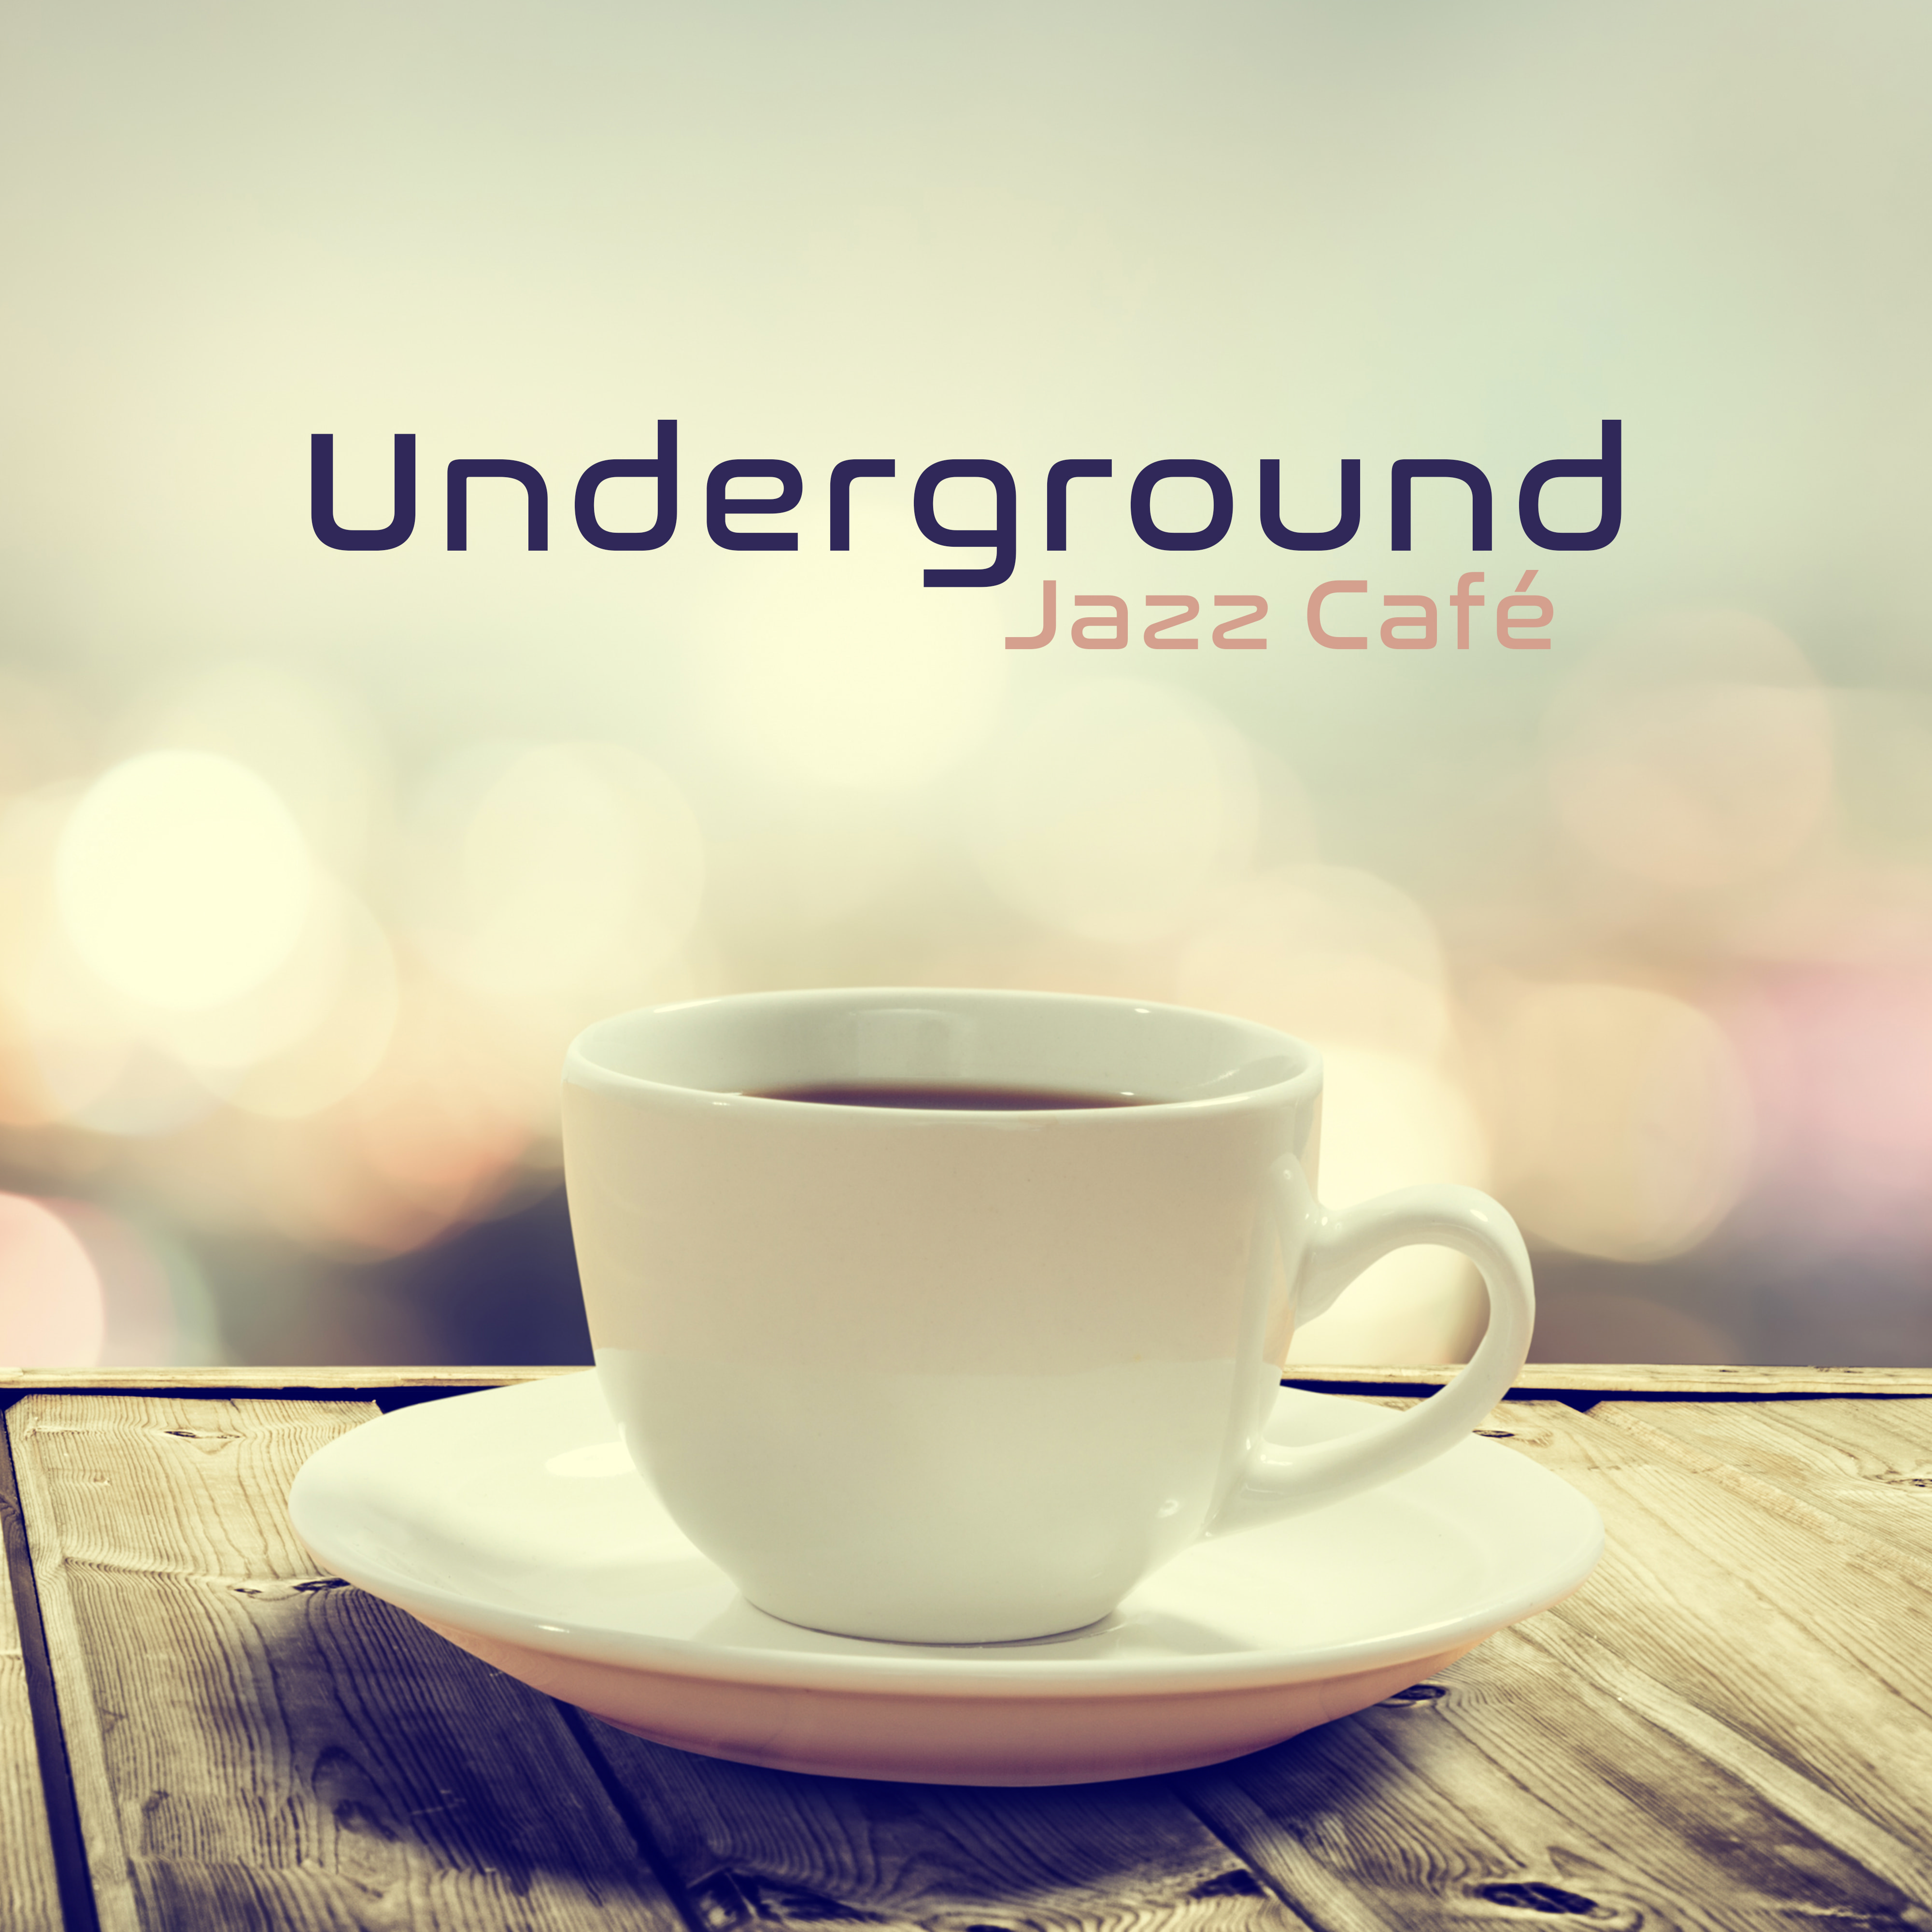 Underground Jazz Cafe